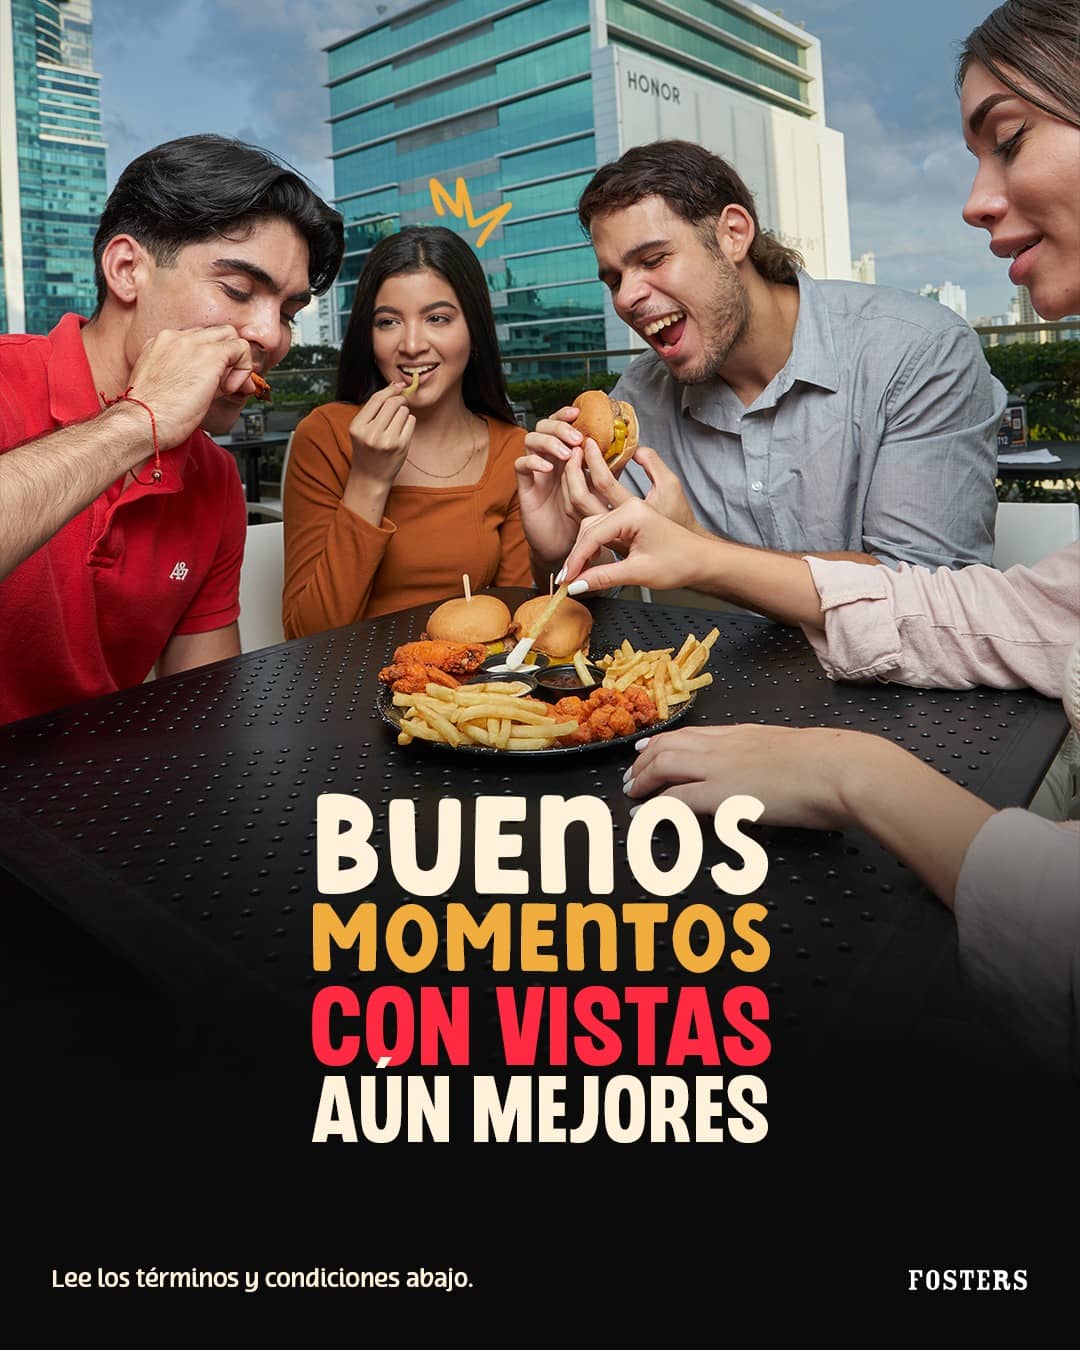 Restaurant de Hamburguesas para Compartir con Amigos y Familia - Fosters Panama